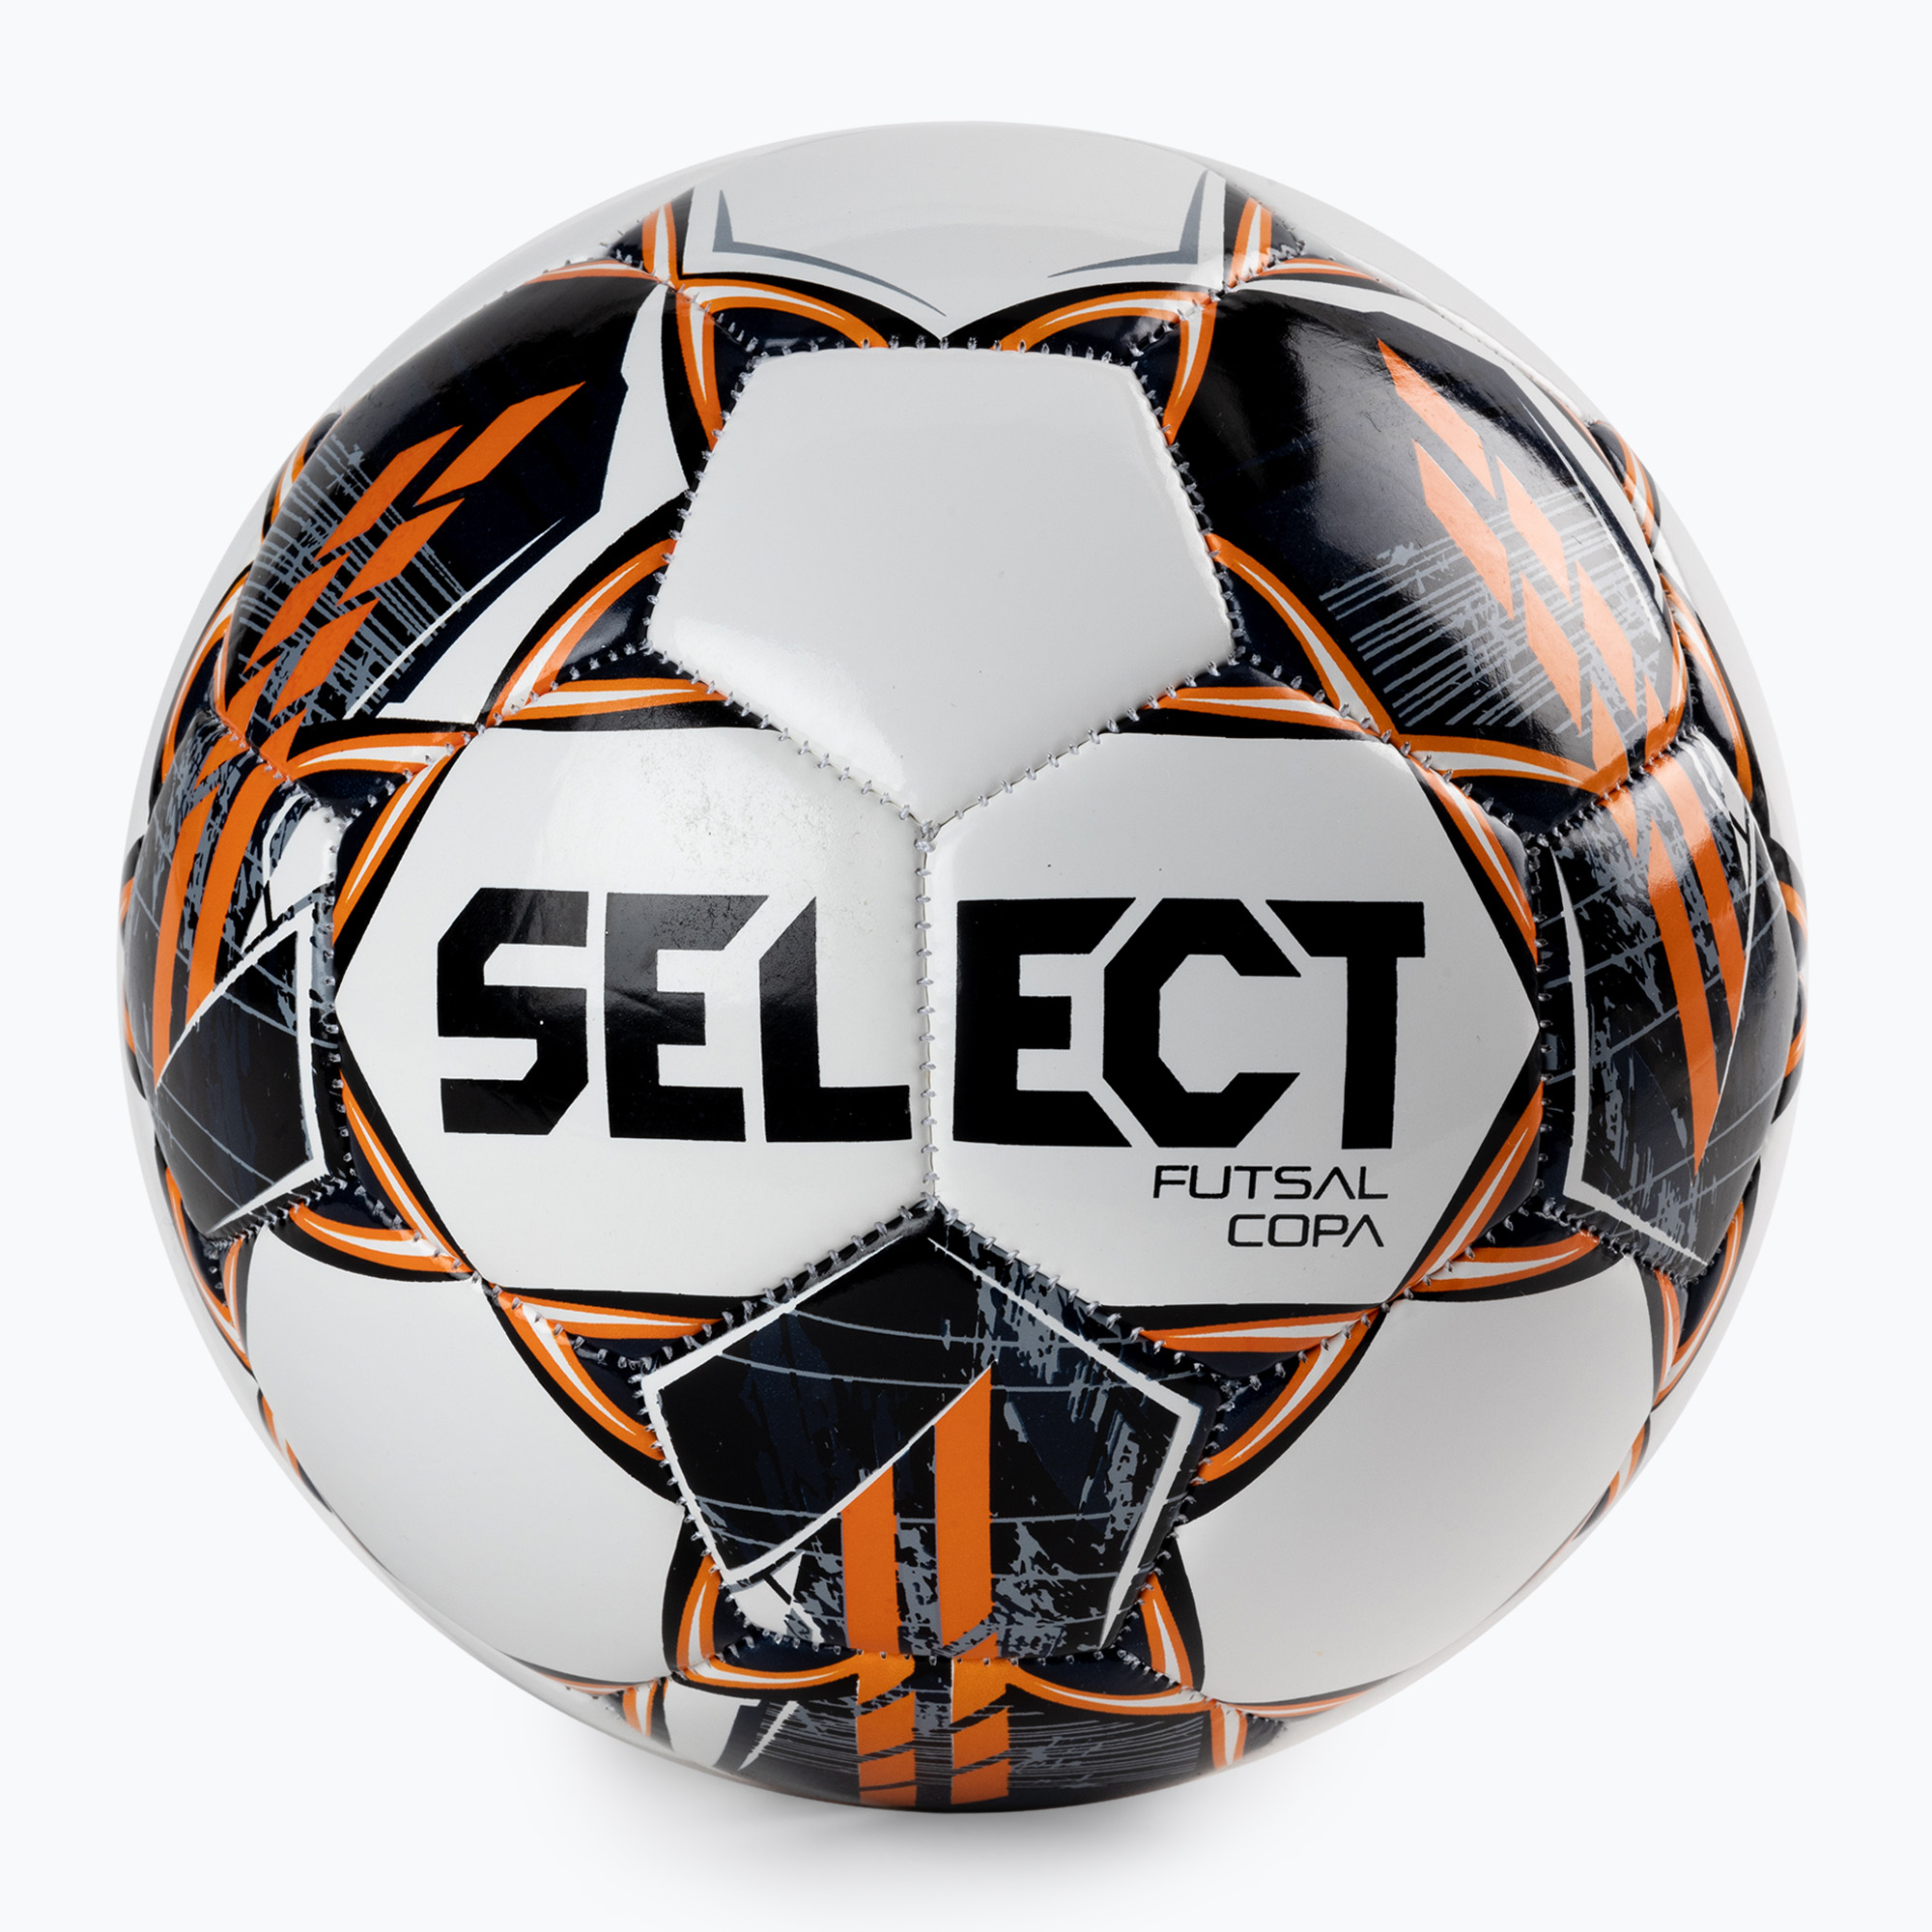 SELECT Futsal Copa football V22 329